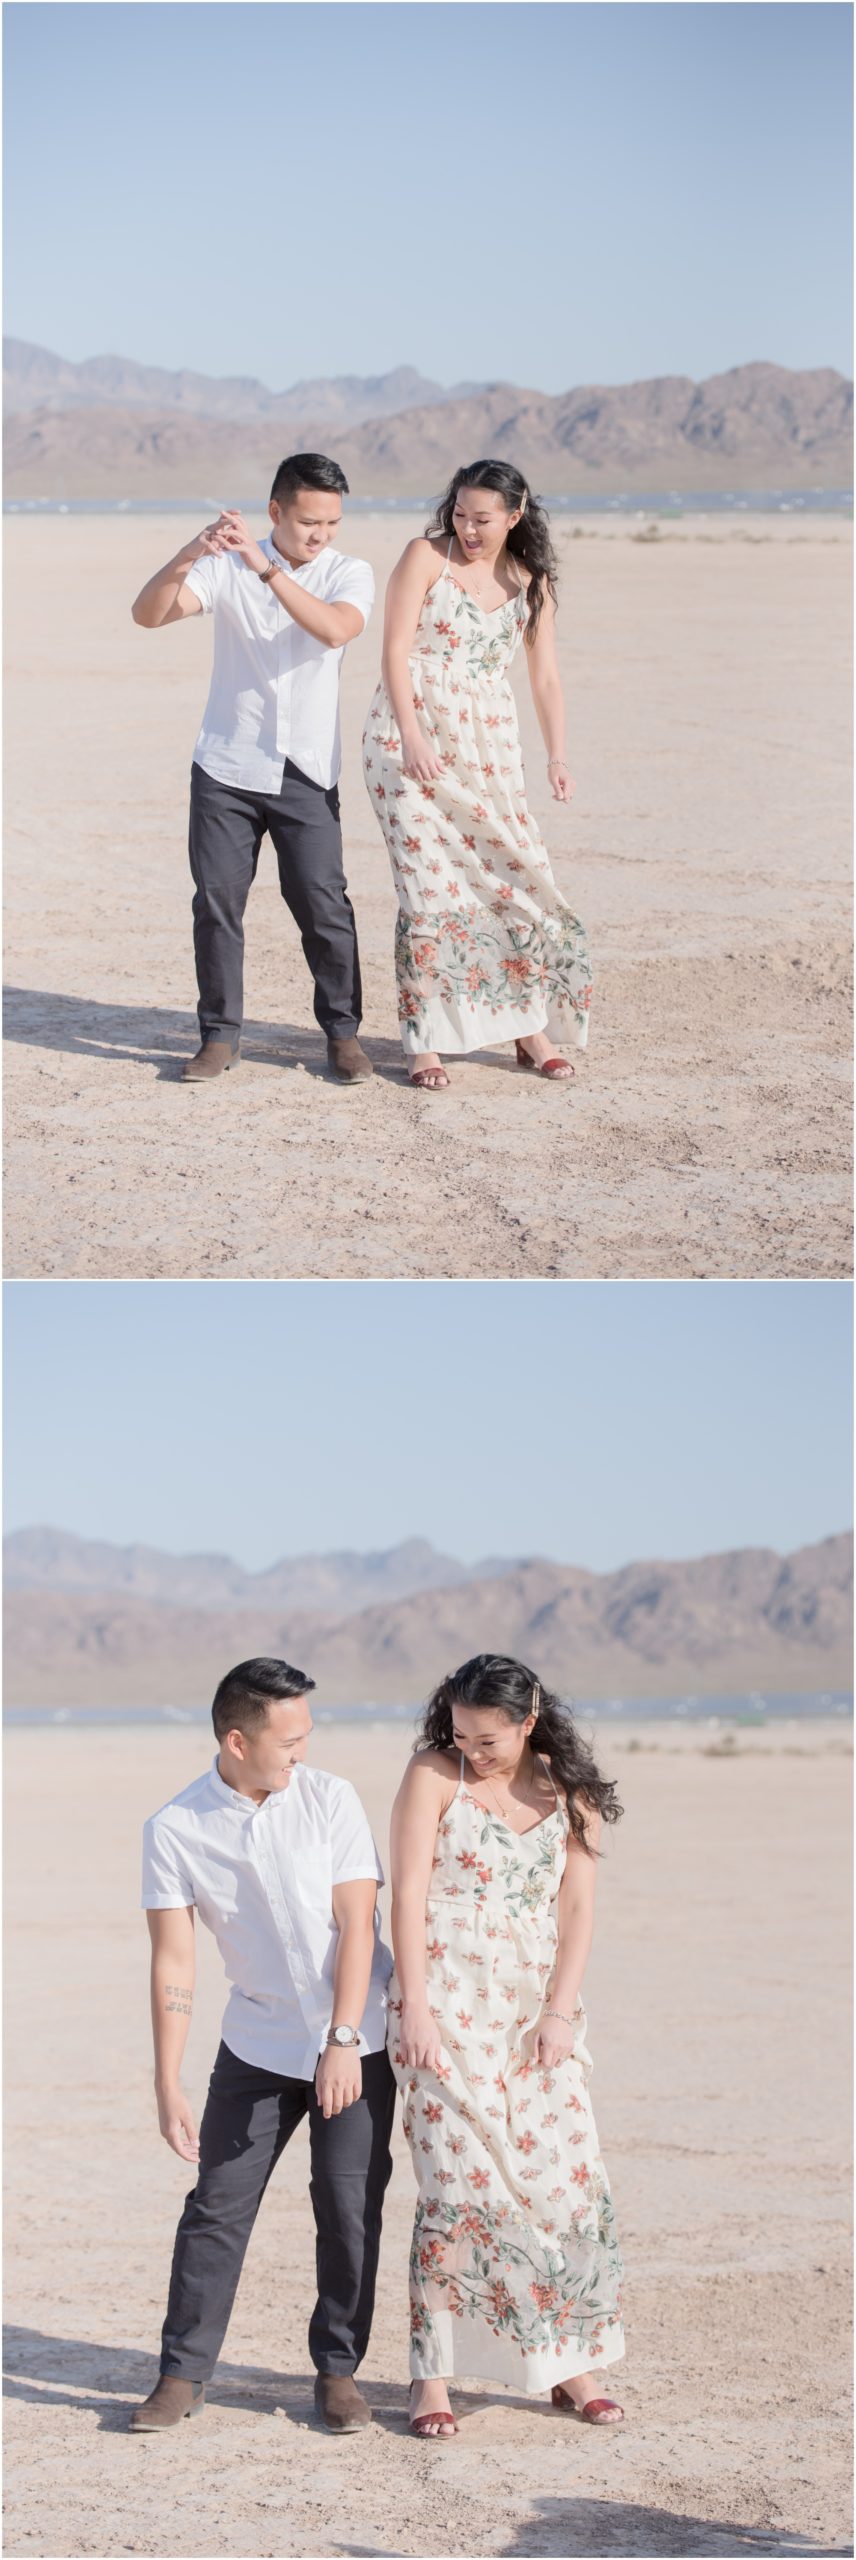 Couple Dancing in the Desert 